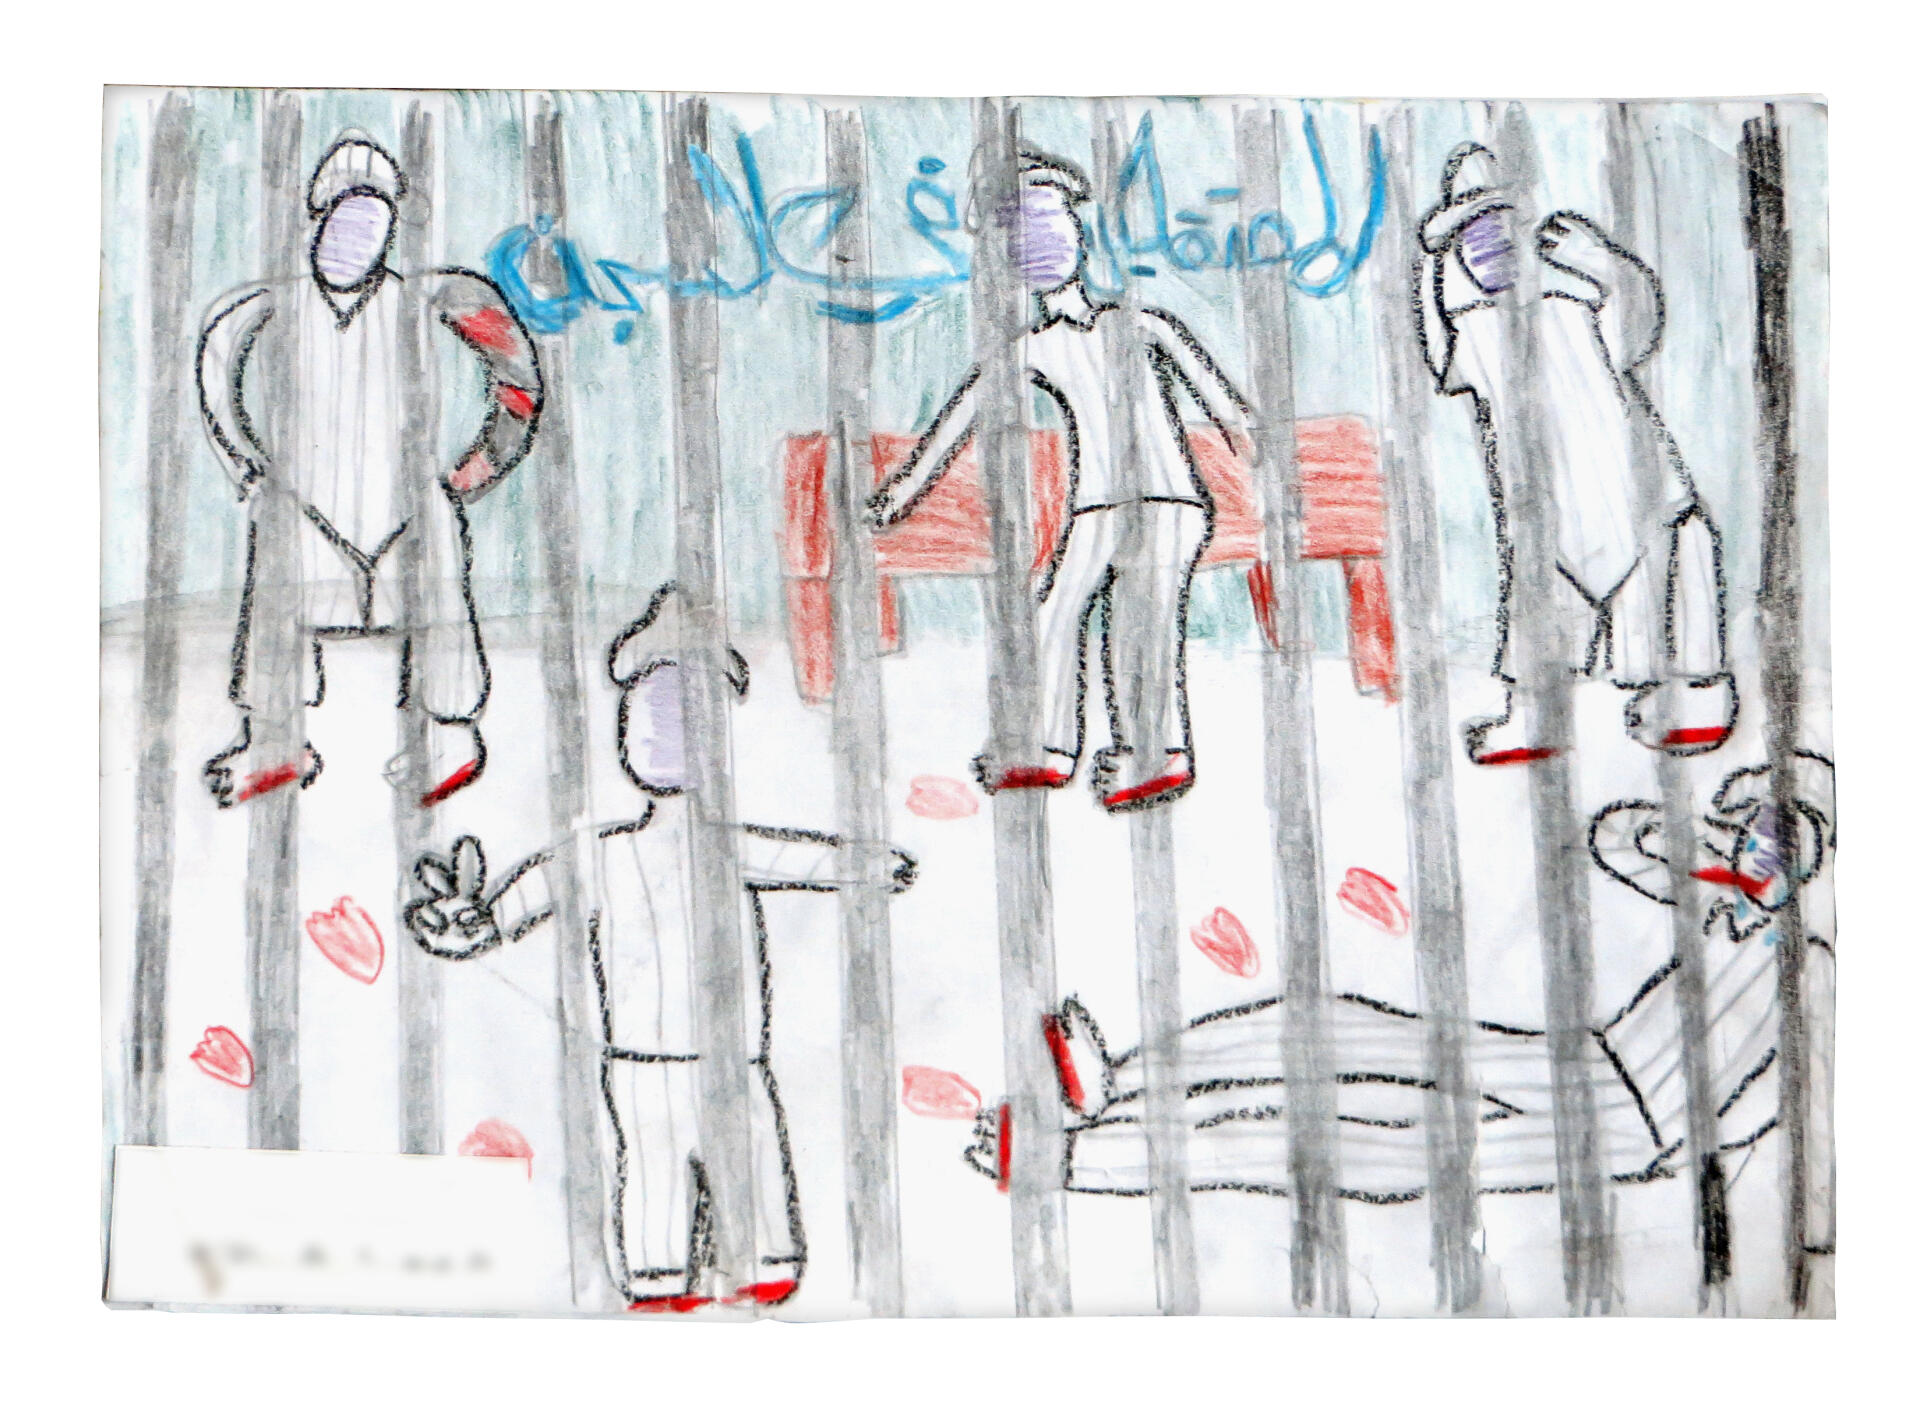 « Les détenus dans la prison » a écrit sur son dessin un garçon d’Alep, âgé de 11 ou 12 ans. Jusqu’à la prise de l’est de la ville, à l’été 2012, par les forces de l’opposition, les manifestants sont arrêtés en masse. La torture quasi systématique est alors érigée par le régime en arme stratégique pour insuffler la terreur parmi les habitants. Les empreintes sanglantes représentées ici évoquent le supplice de la falaqa, bastonnade de la plante des pieds. Dessin collecté en 2014 dans un atelier.